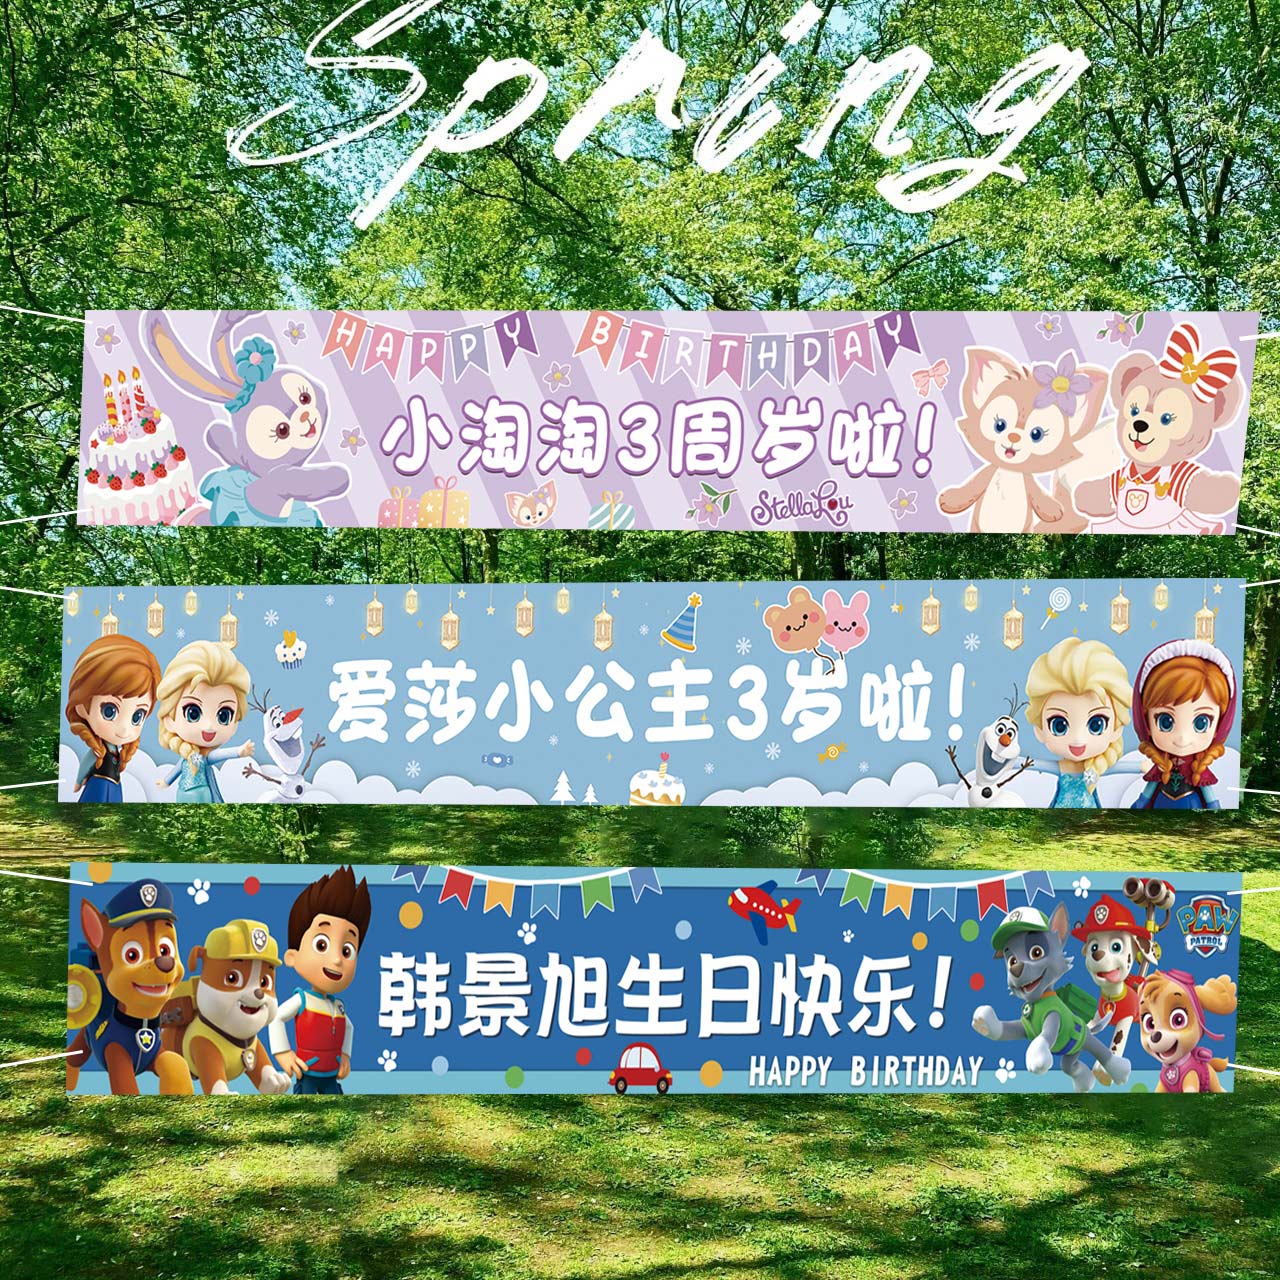 生日快乐装饰横幅幼儿园派对场景布置海报背景布户外学校拍照道具